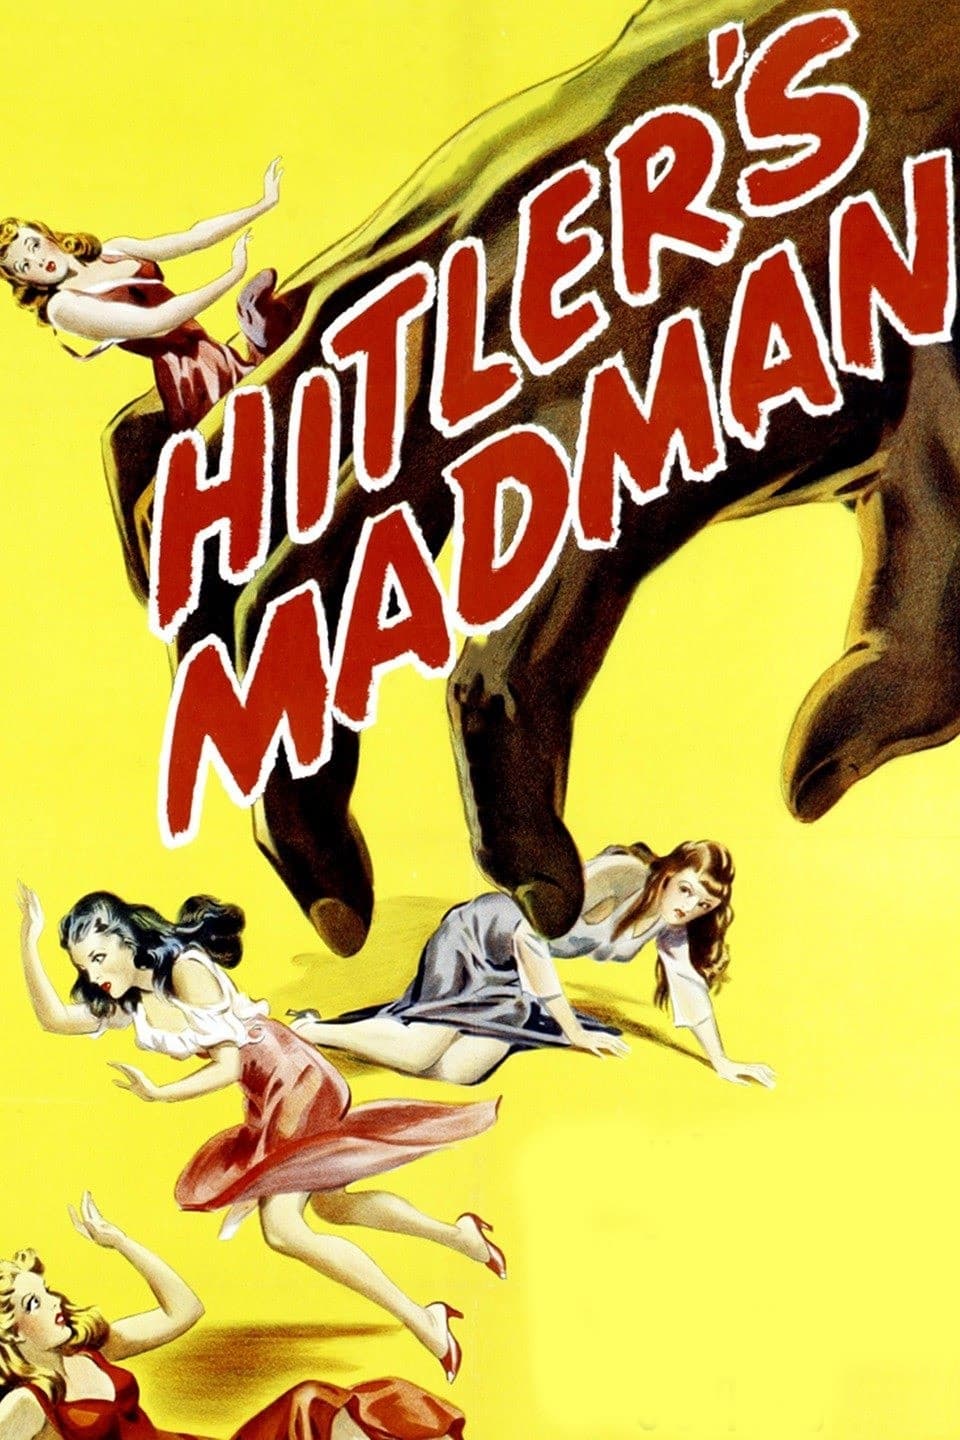 Hitler's Madman (1943)